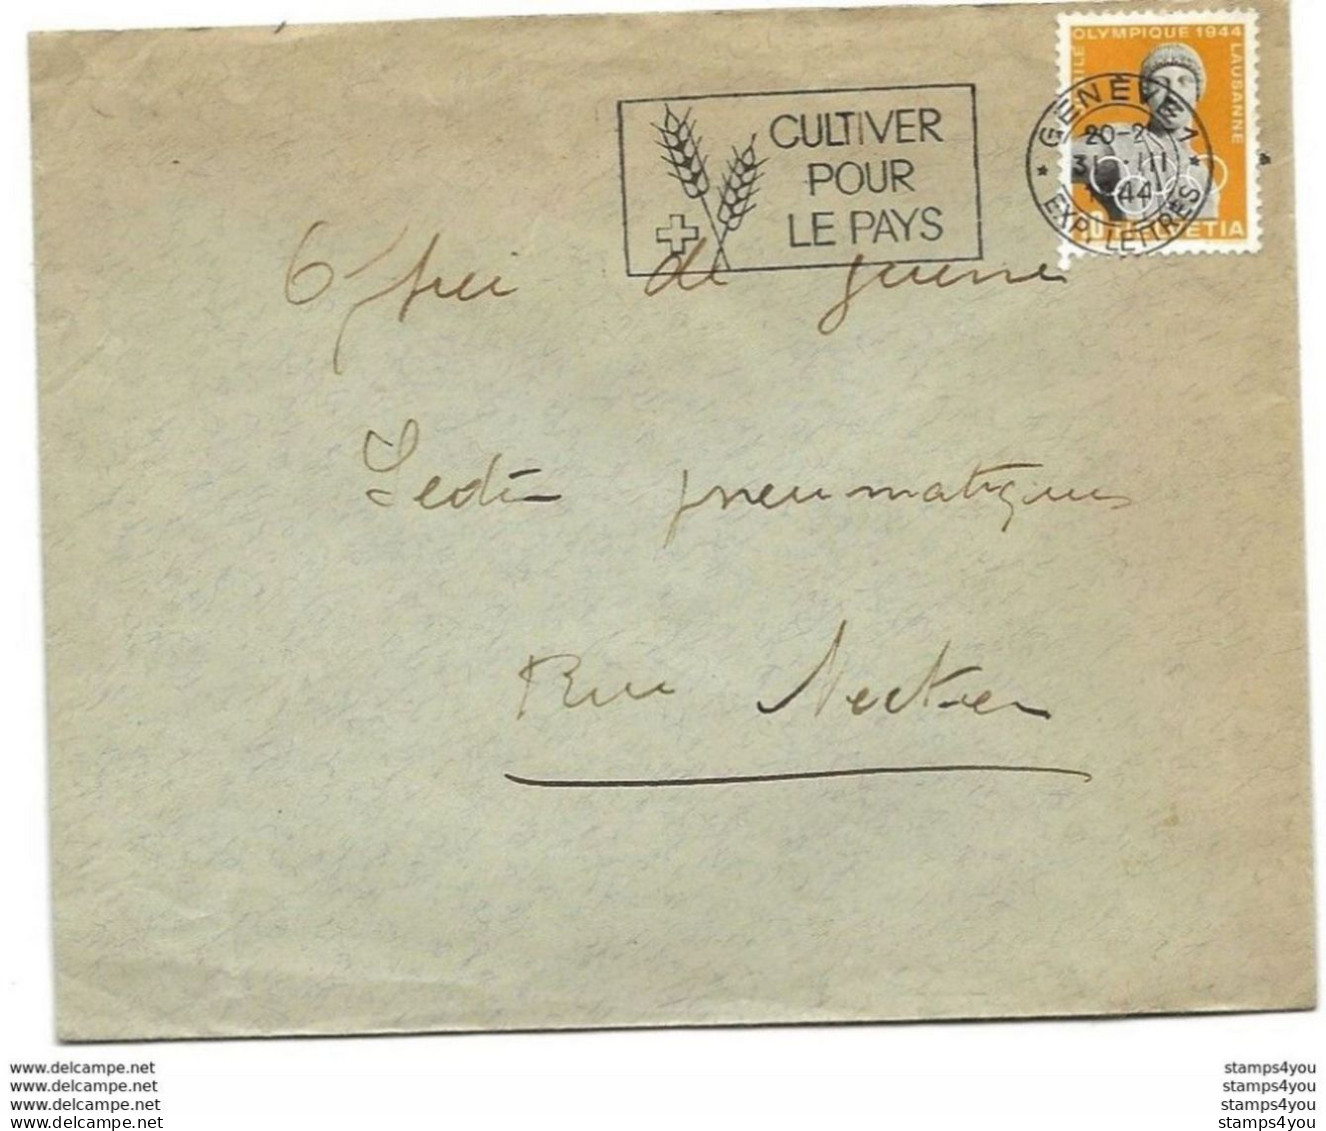 I - 96 - Enveloppe Avec Oblit Mécanique "Cultiver Pour Le Pays" 1944 - Briefe U. Dokumente